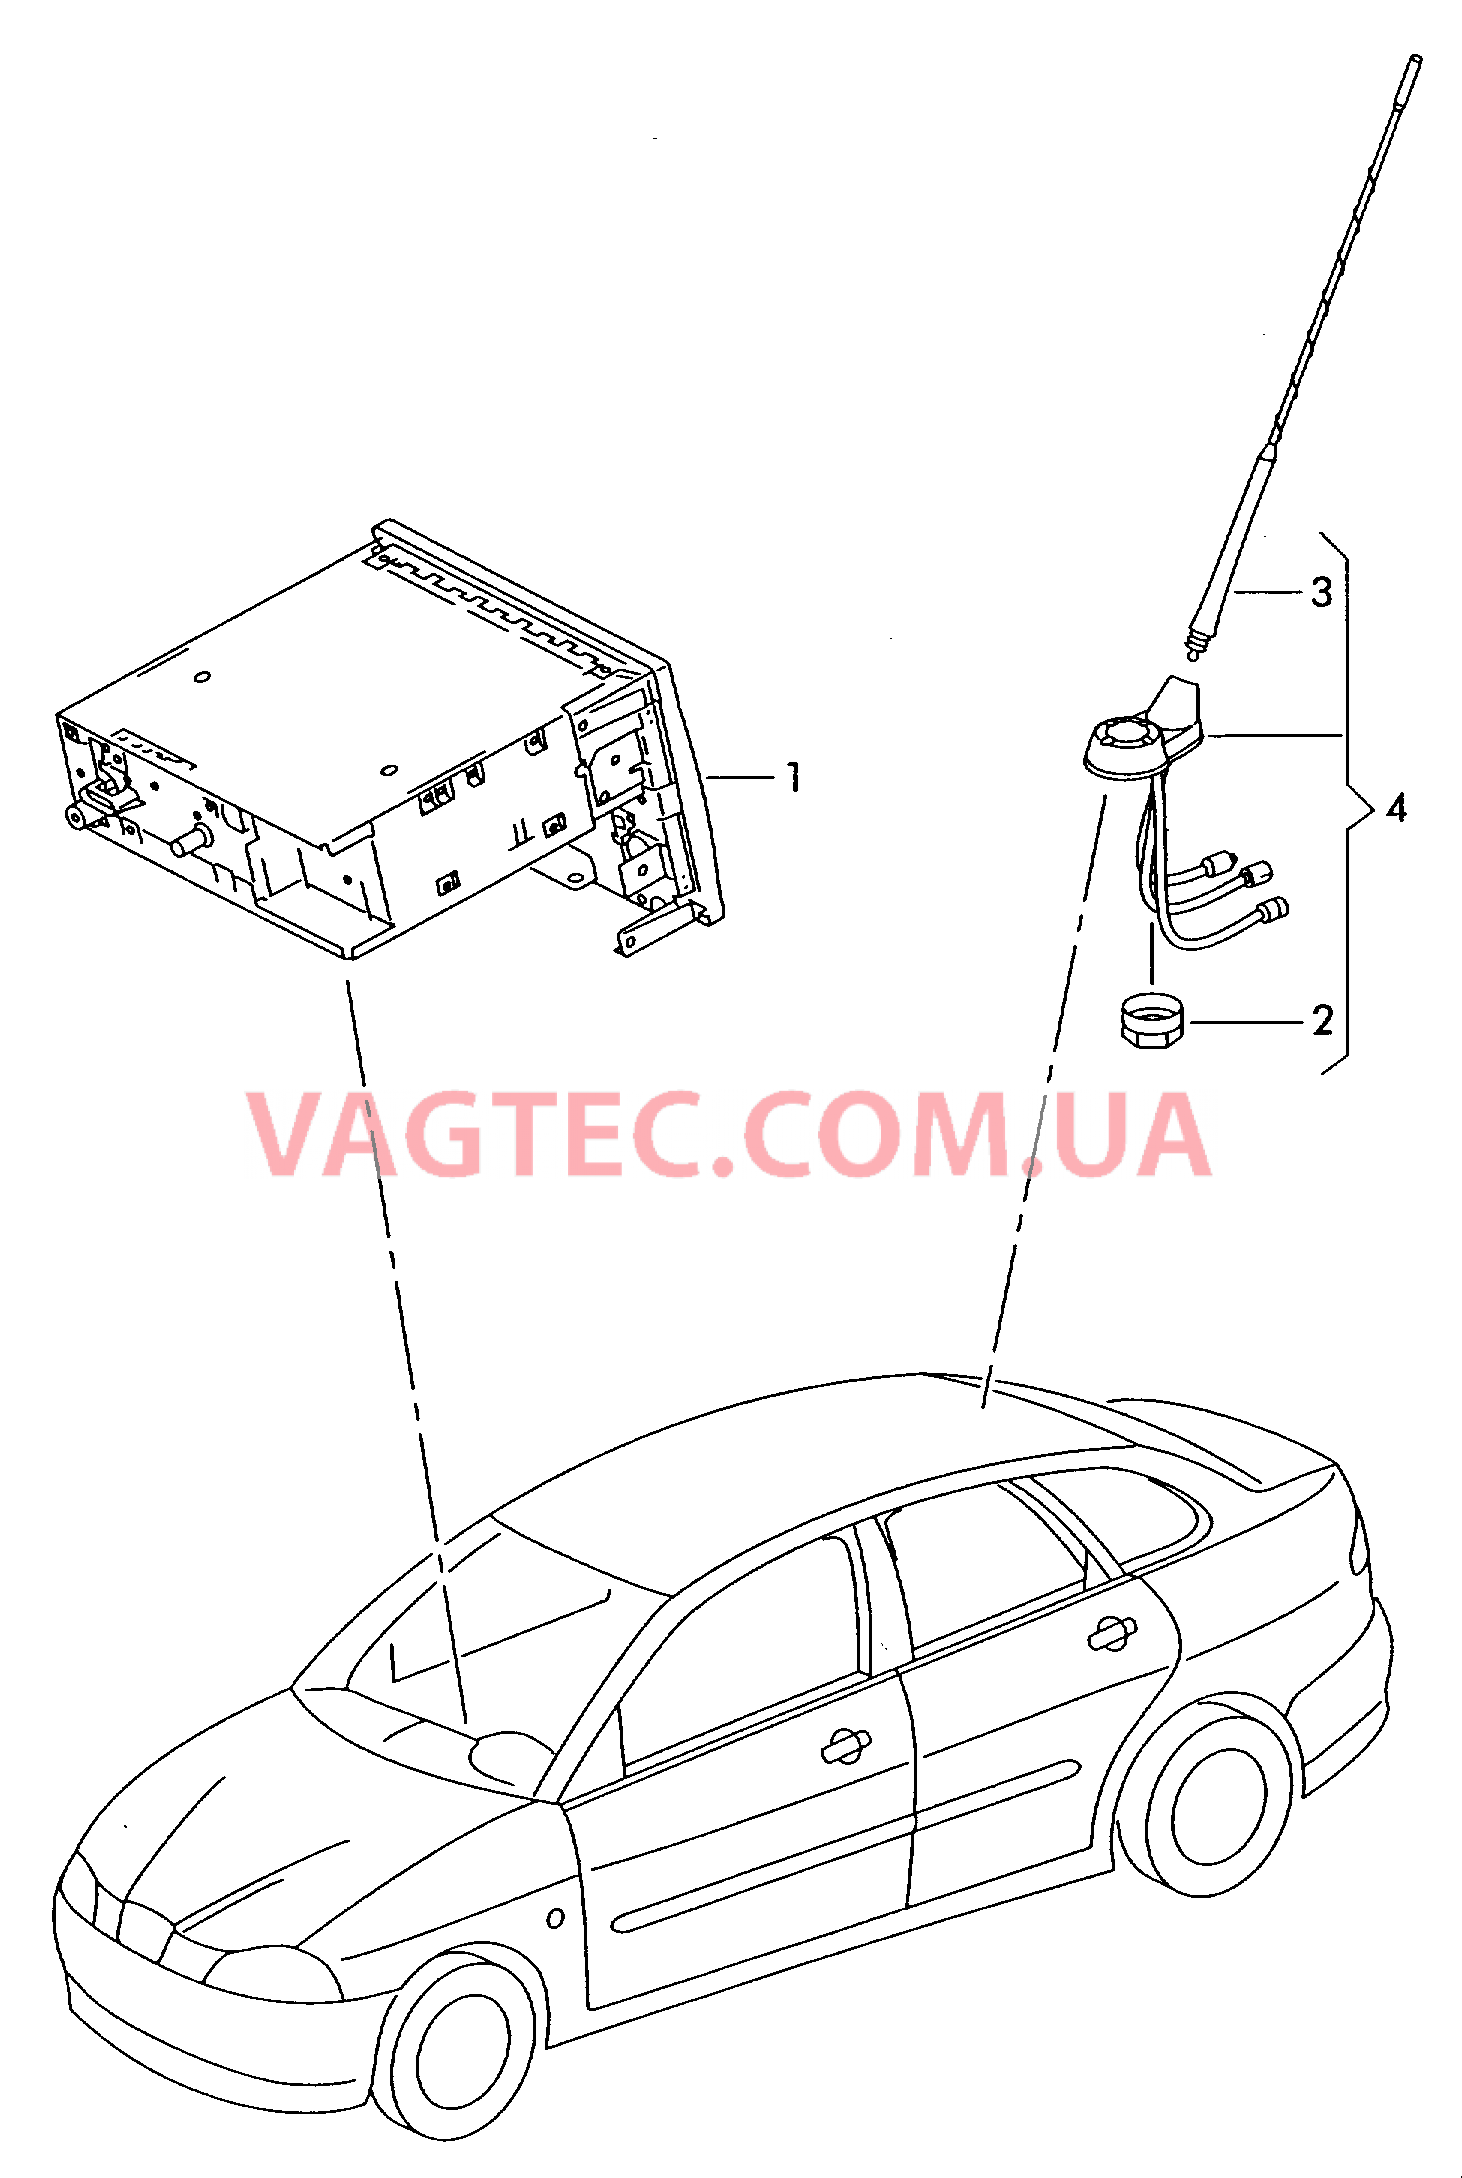 Электрические детали для системы навигации  для SEAT CO 2005